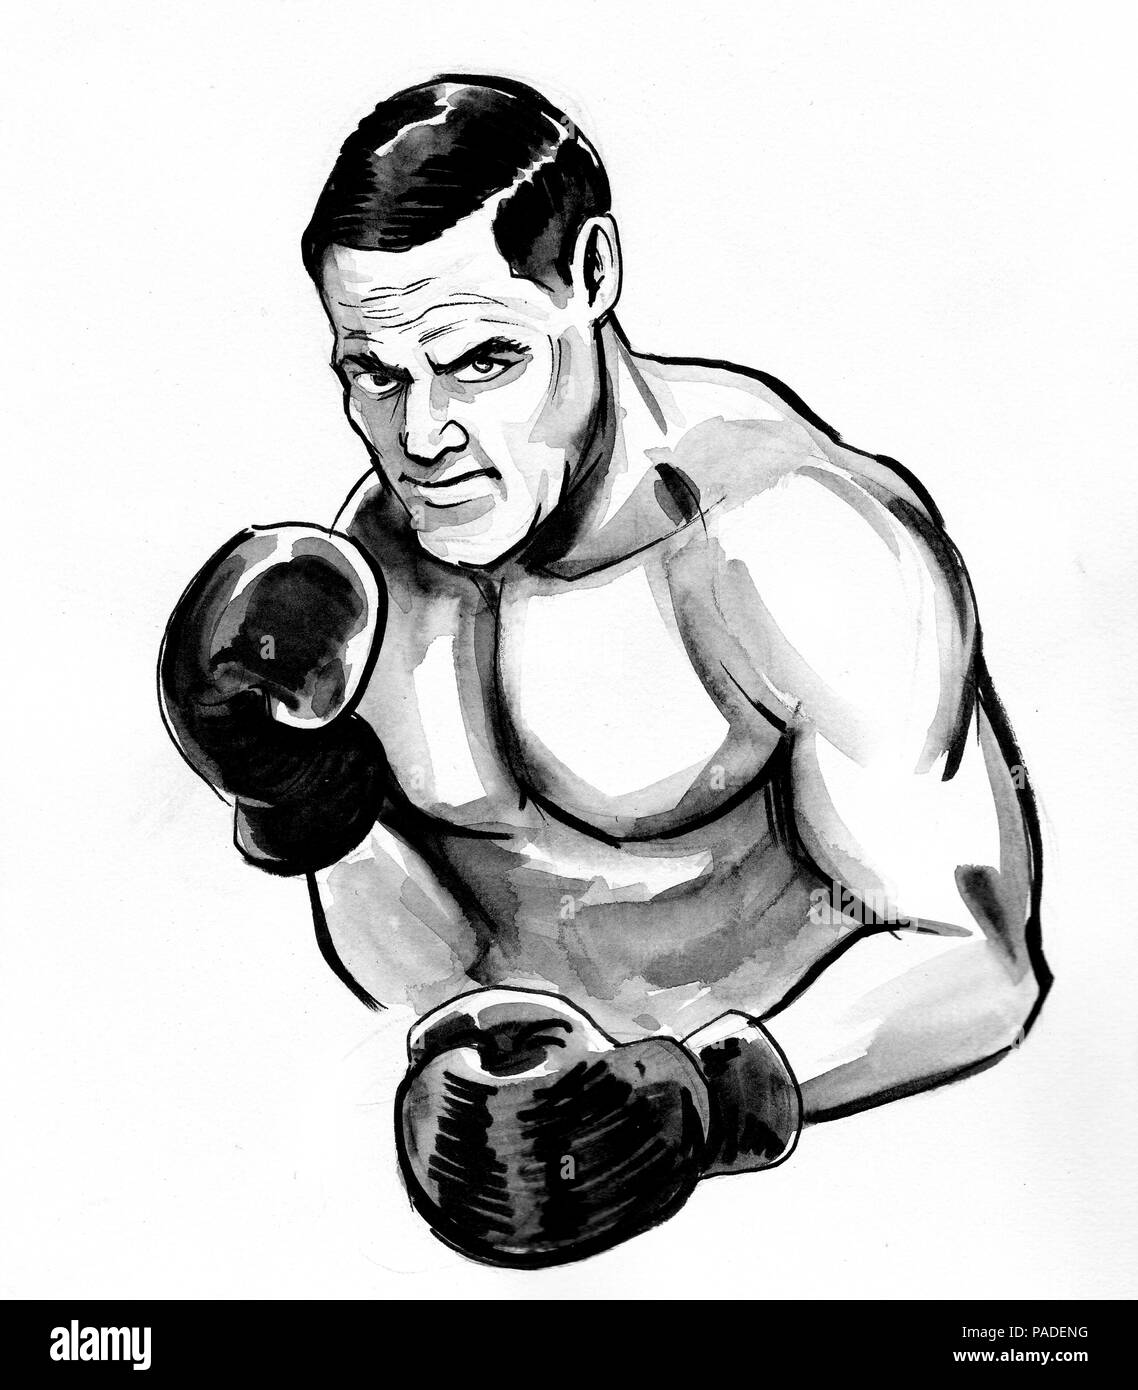 Boxing man. Ink retro styled illustration Stock Photo - Alamy